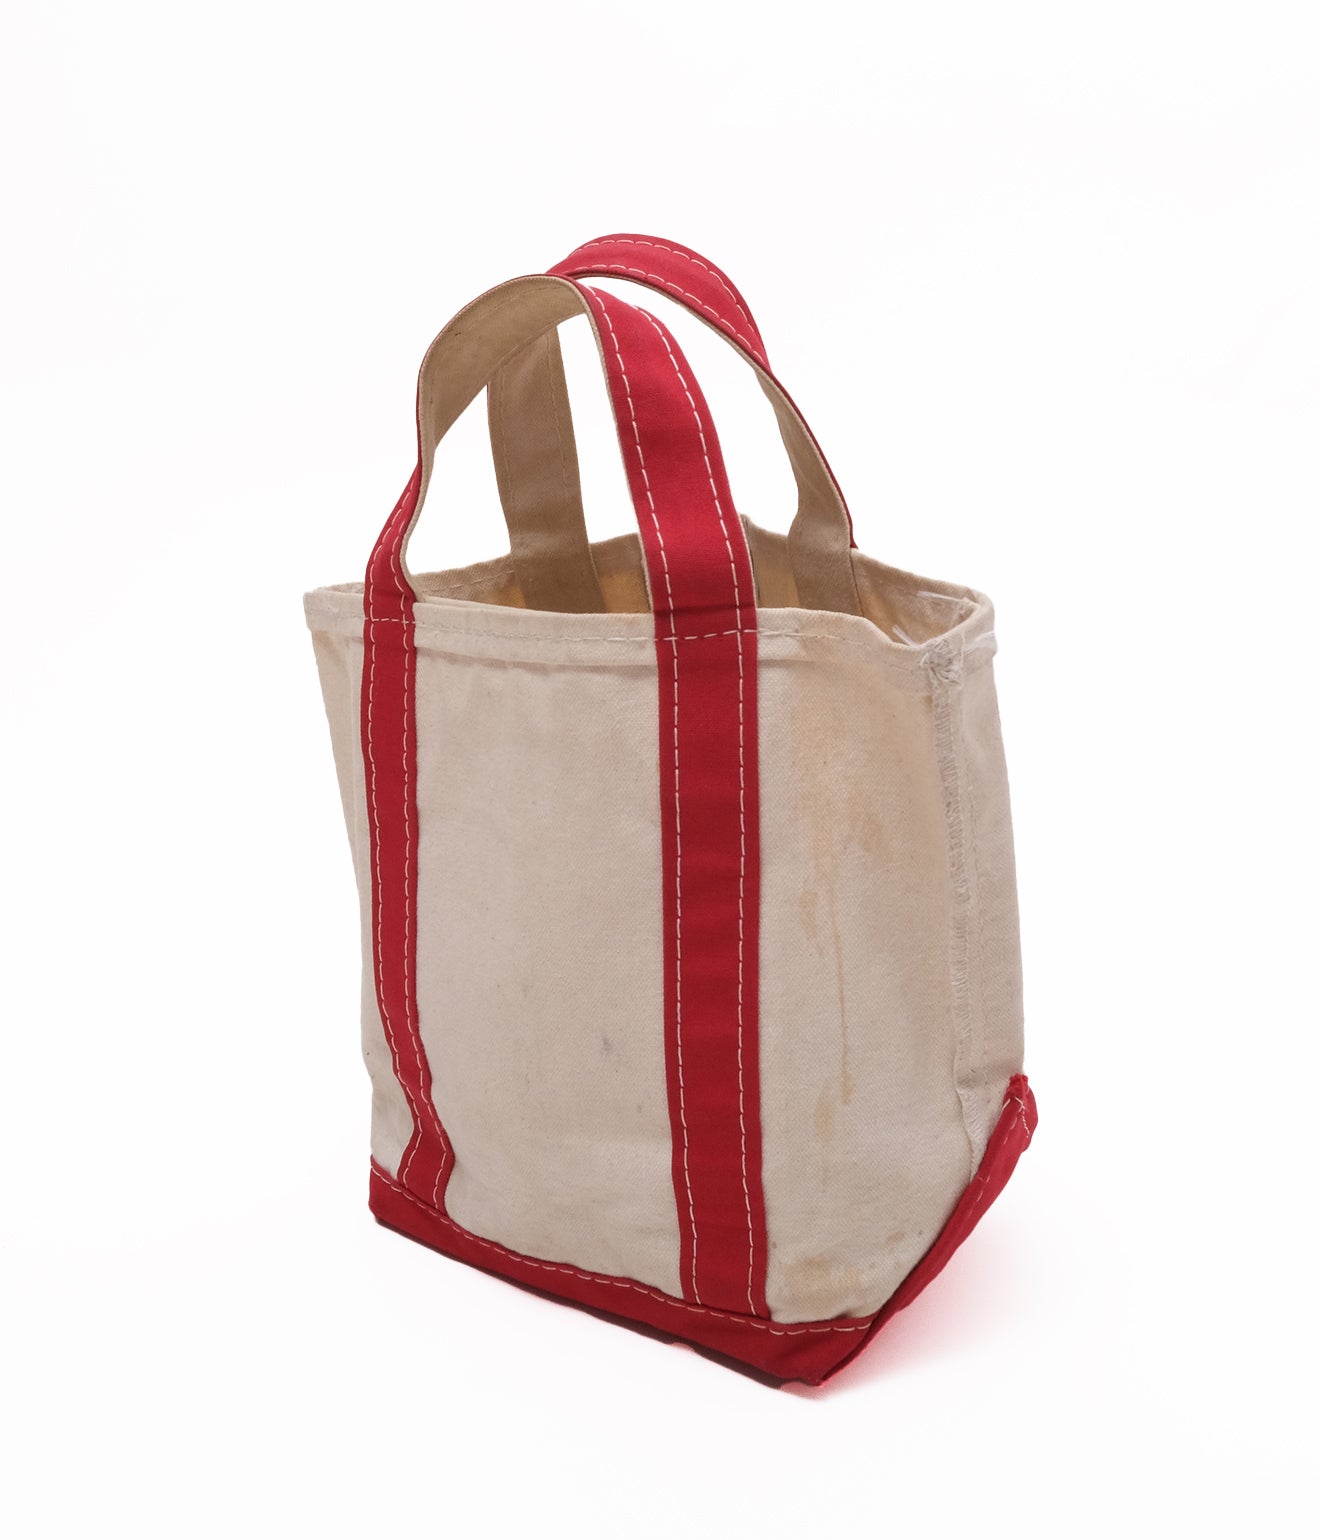 90's LLBean Tote Bag (Natural×Red)